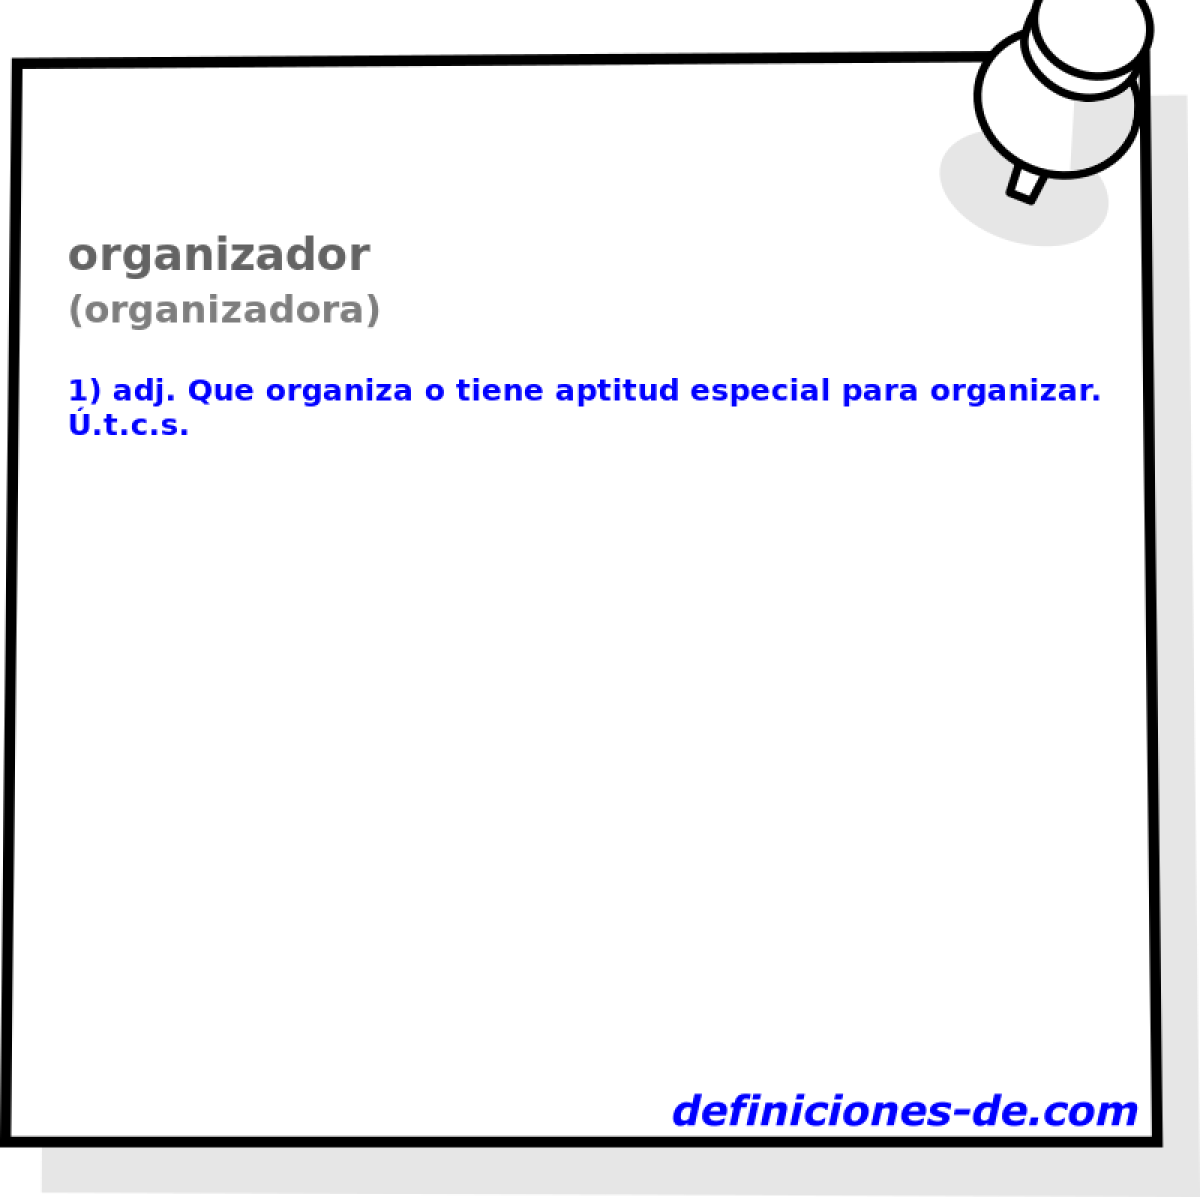 organizador (organizadora)